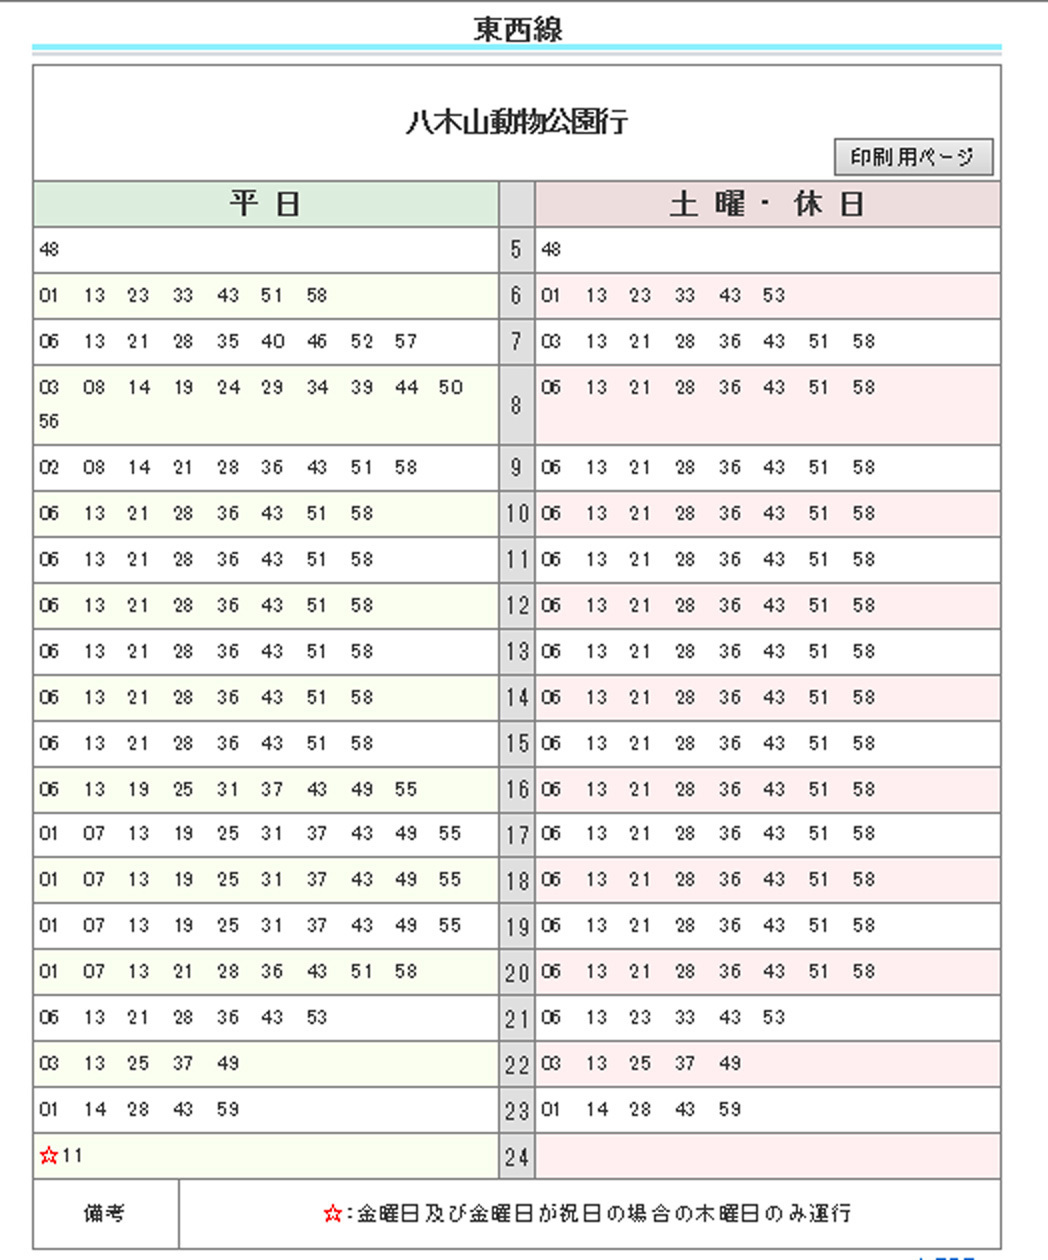 表 時刻 地下鉄 線 南北 東京メトロ南北線の時刻表